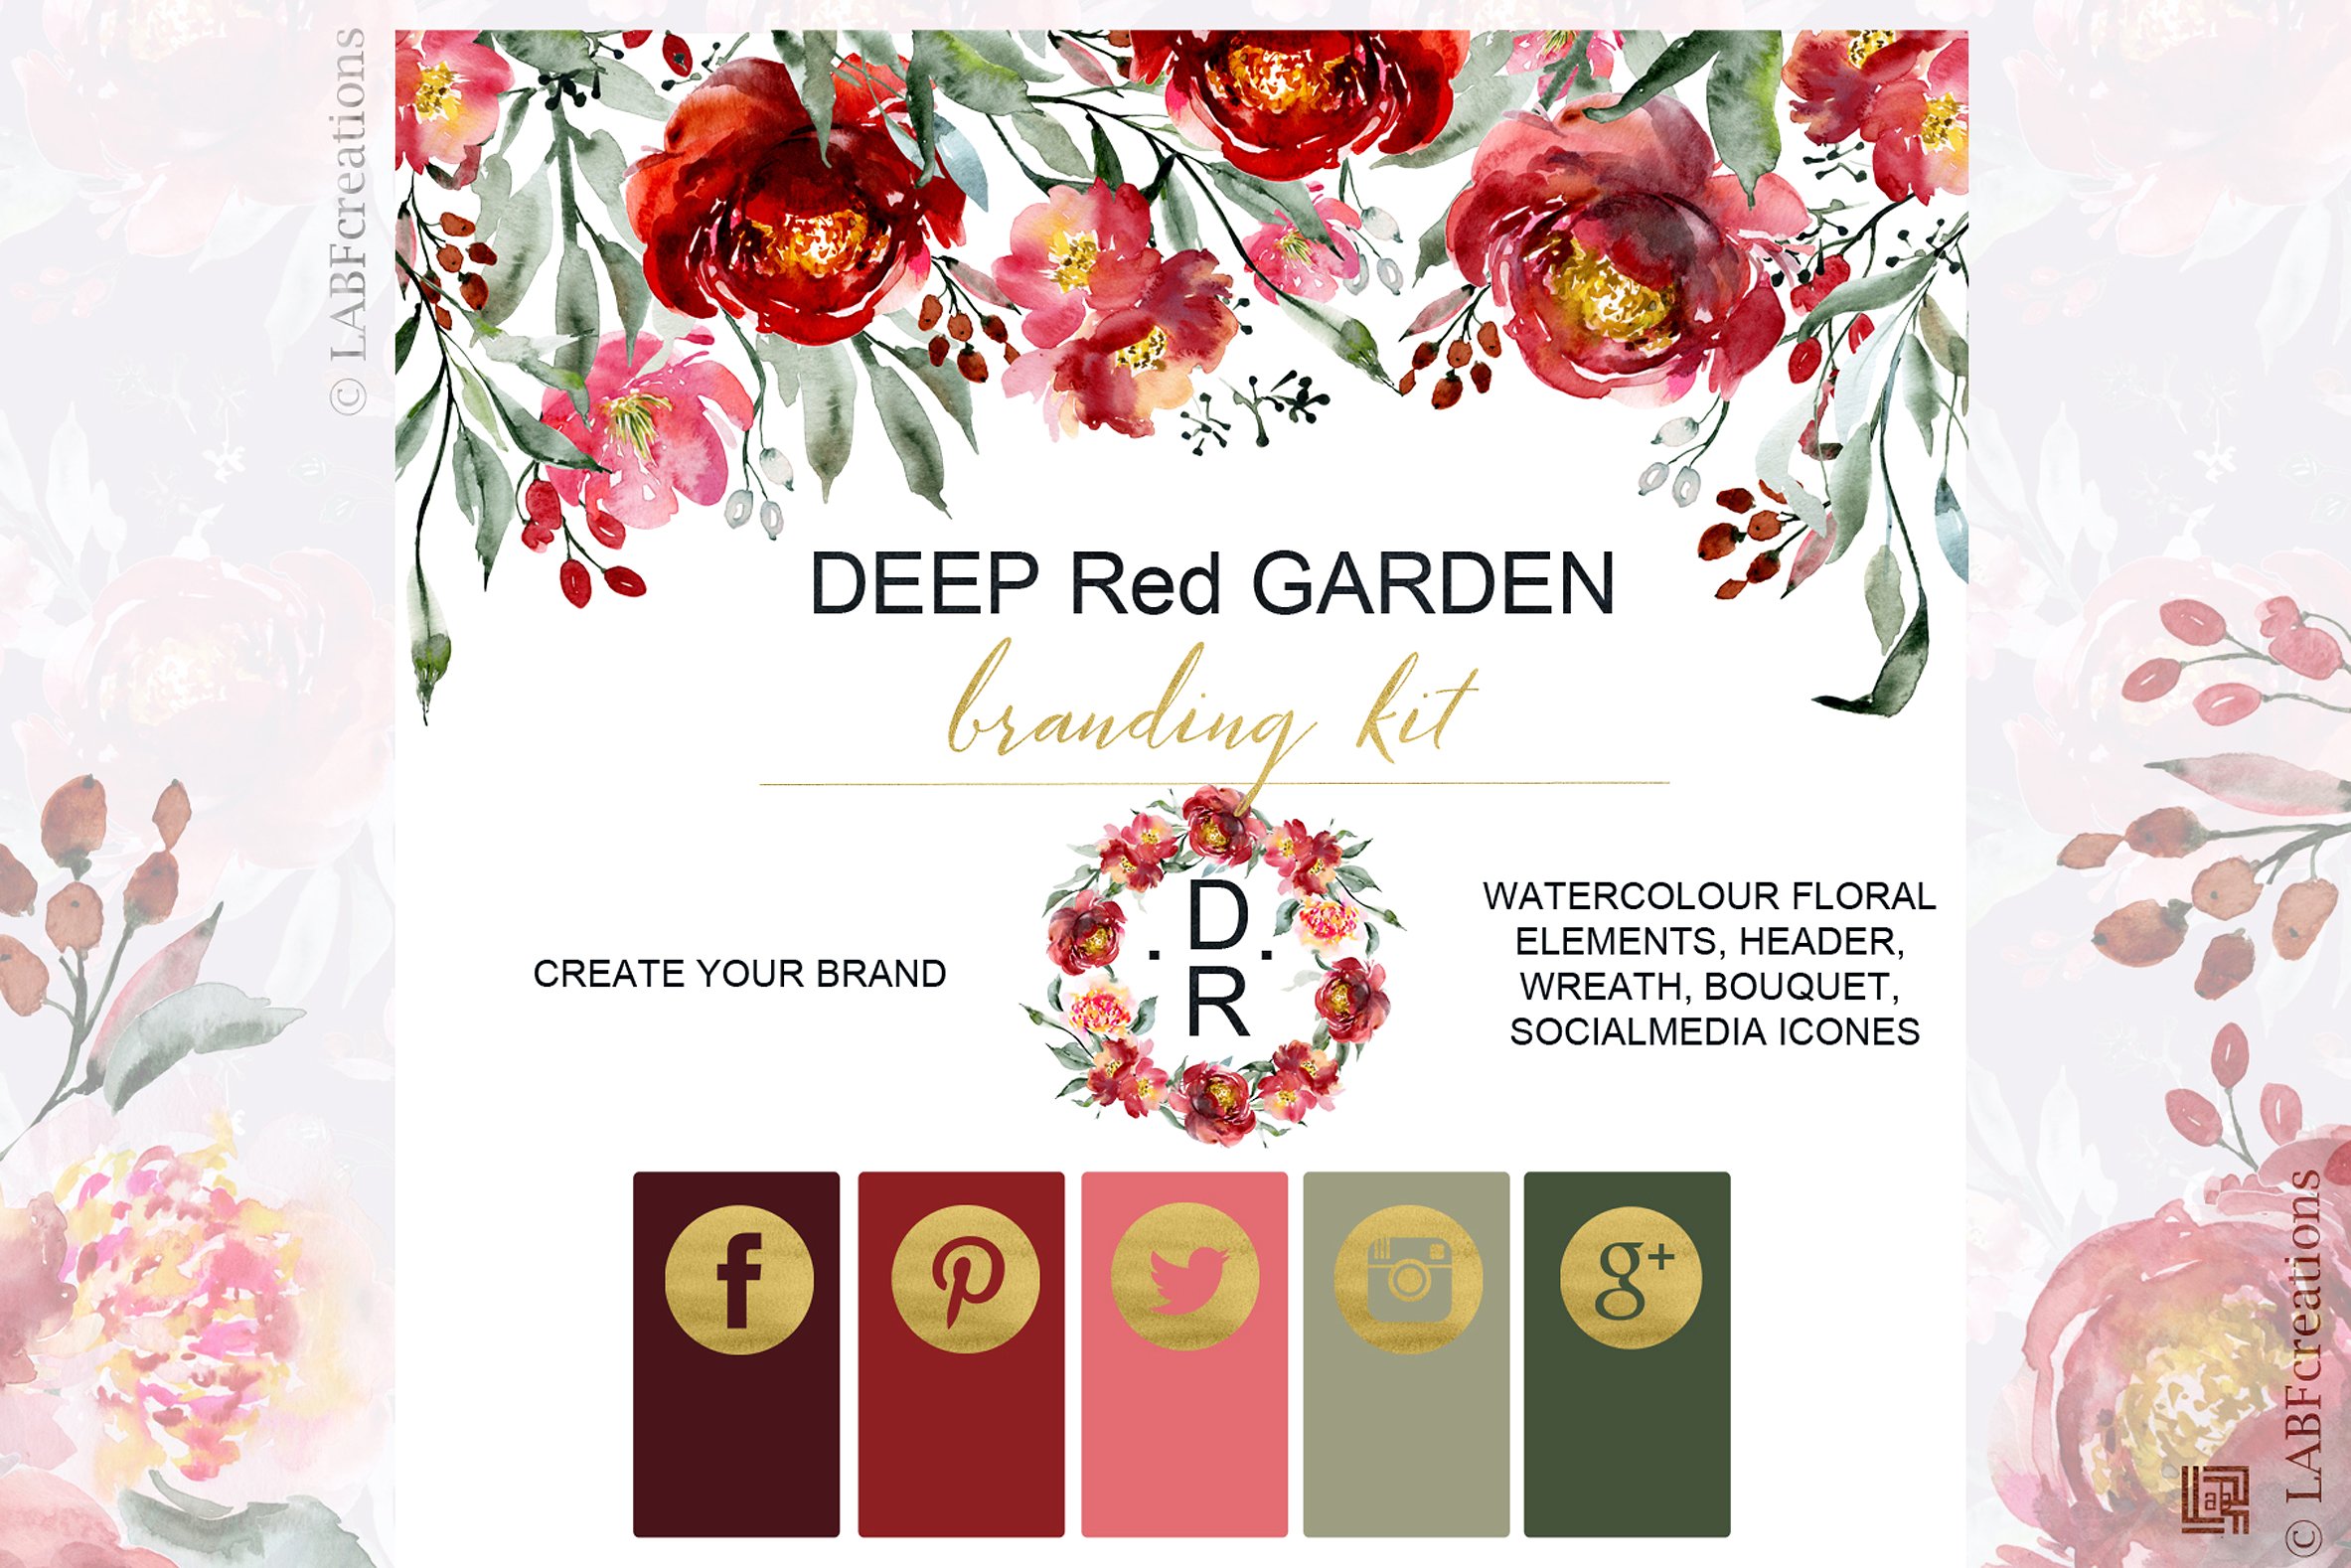 深红色的玫瑰牡丹花圈品牌图案合集 Crimson Rose Peony Wreath Brand Pattern Collection插图3